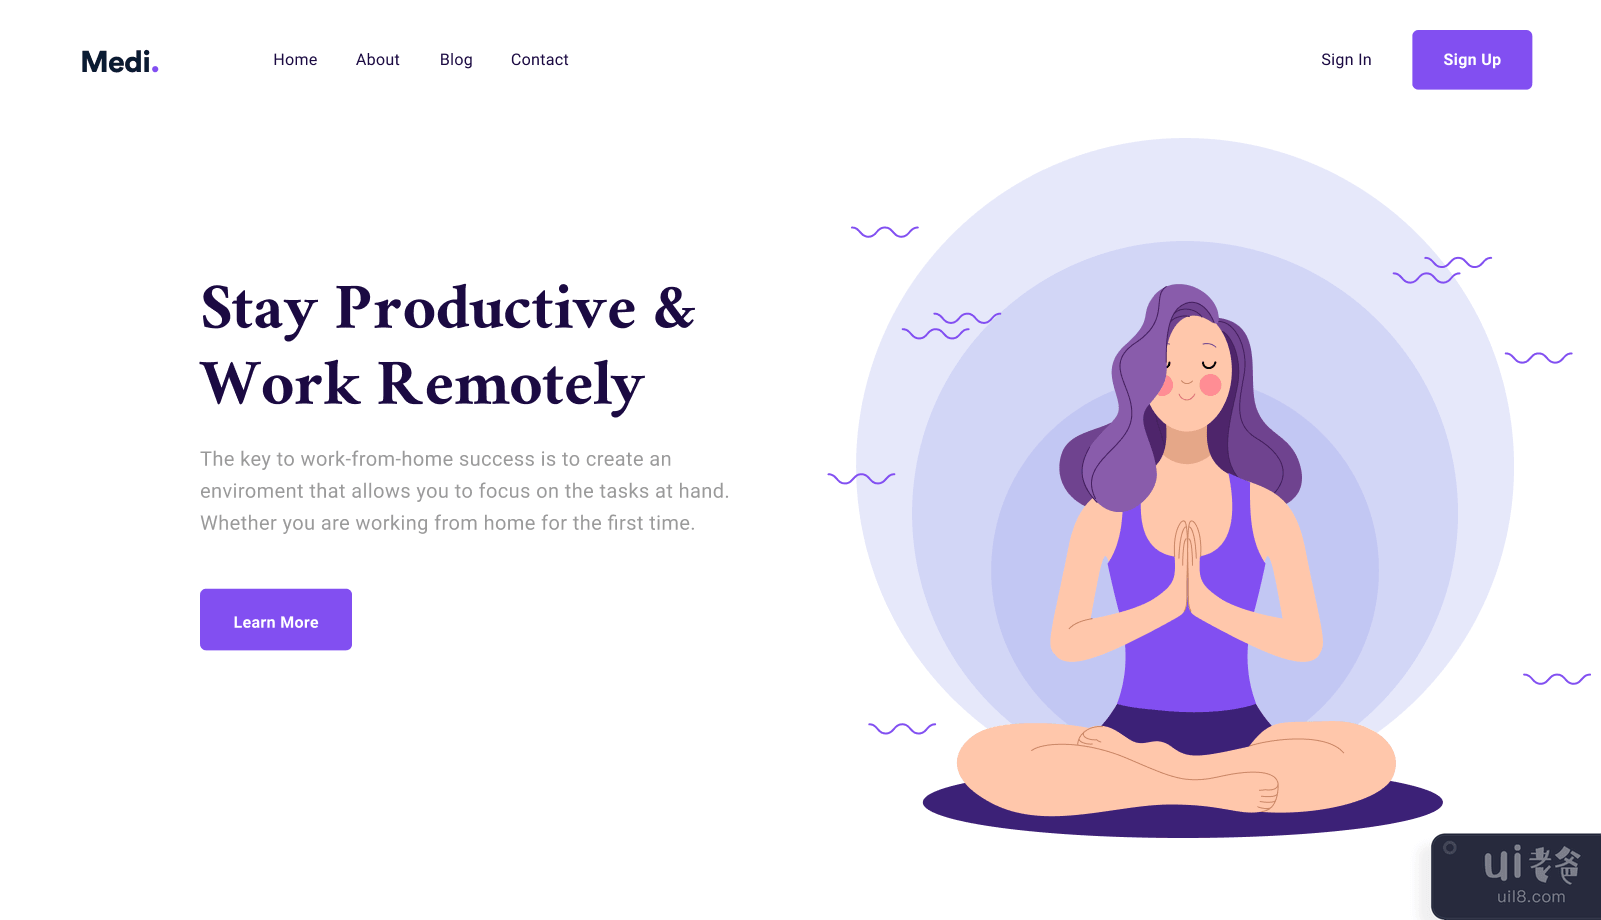 冥想 - 网页标题(Meditation - Web Header)插图